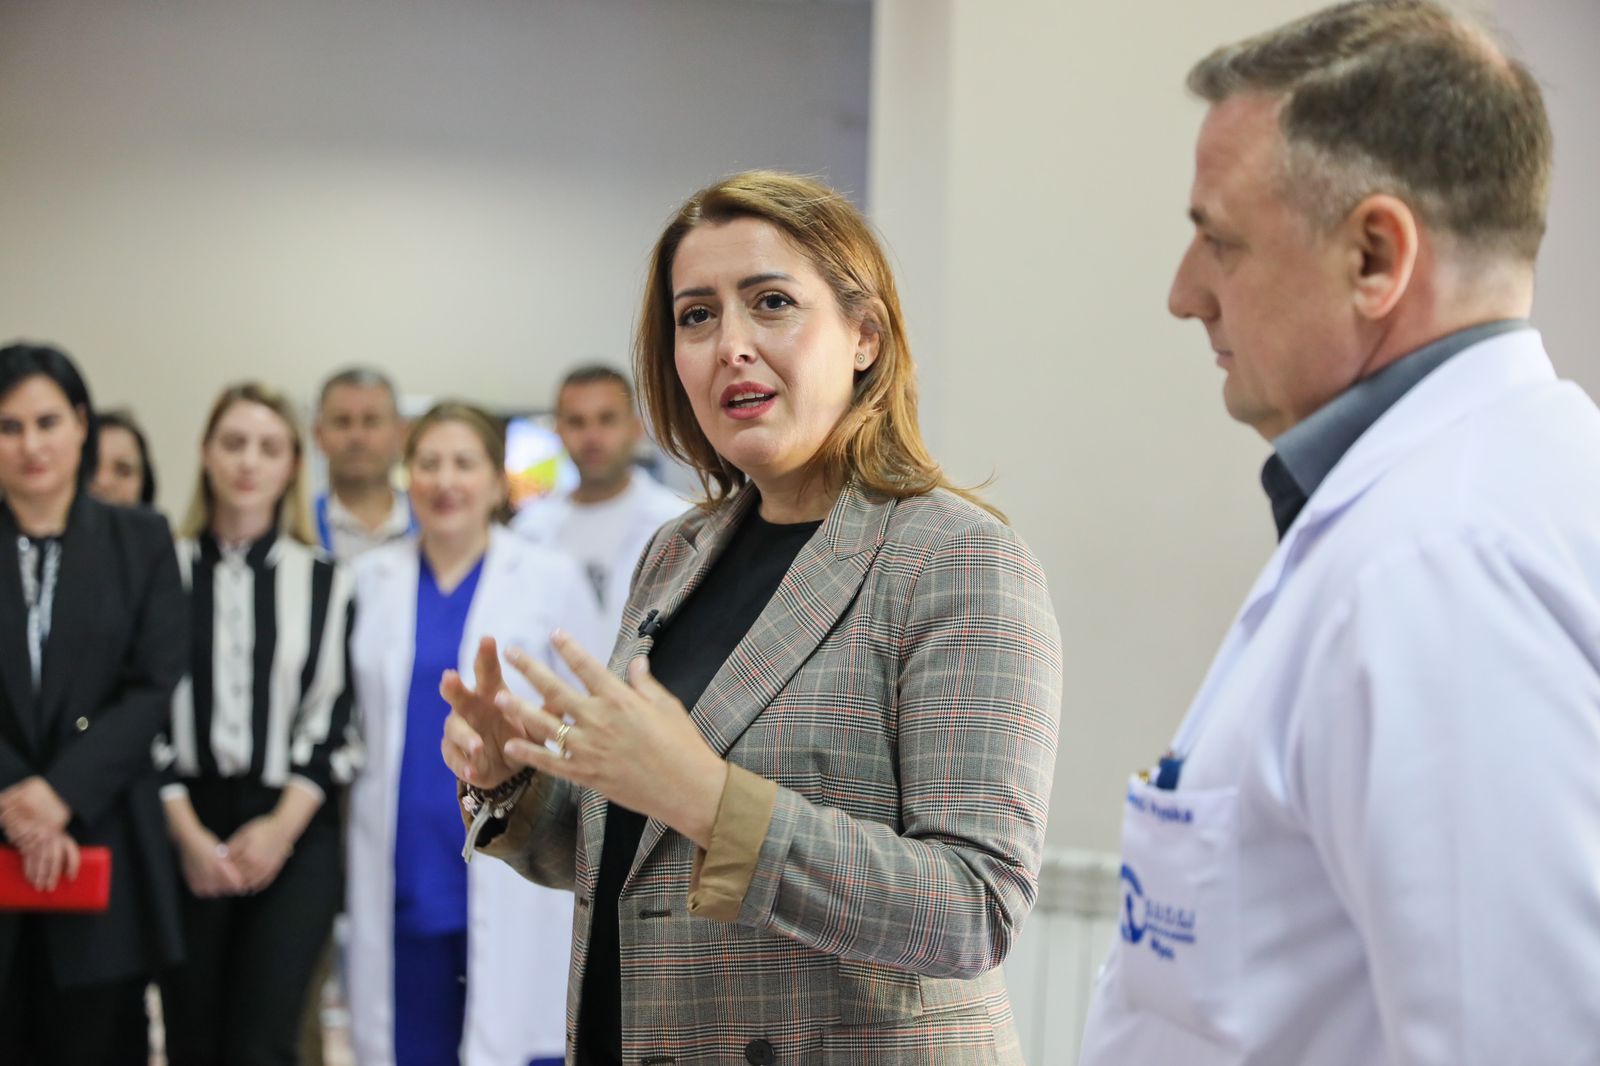 Manastirliu në Maternitetin “Koço Gliozheni”: Për herë të parë në spitalet publike mundësojmë riprodhimin e asistuar, investimi përfundon brenda këtij viti